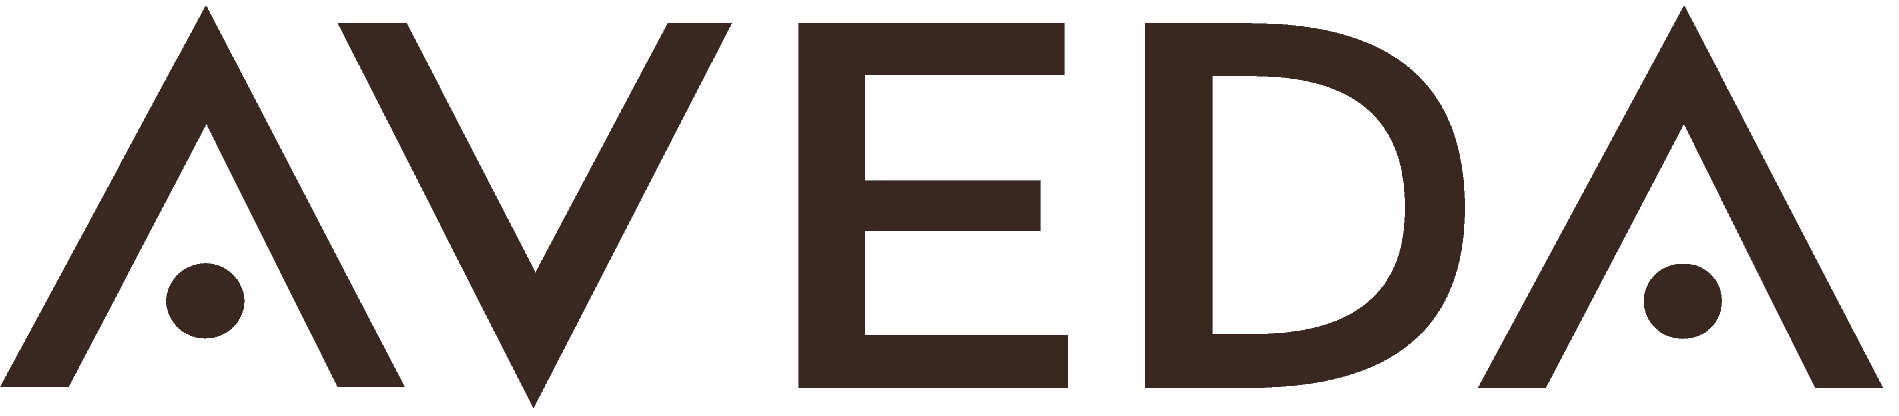 Logo for aveda